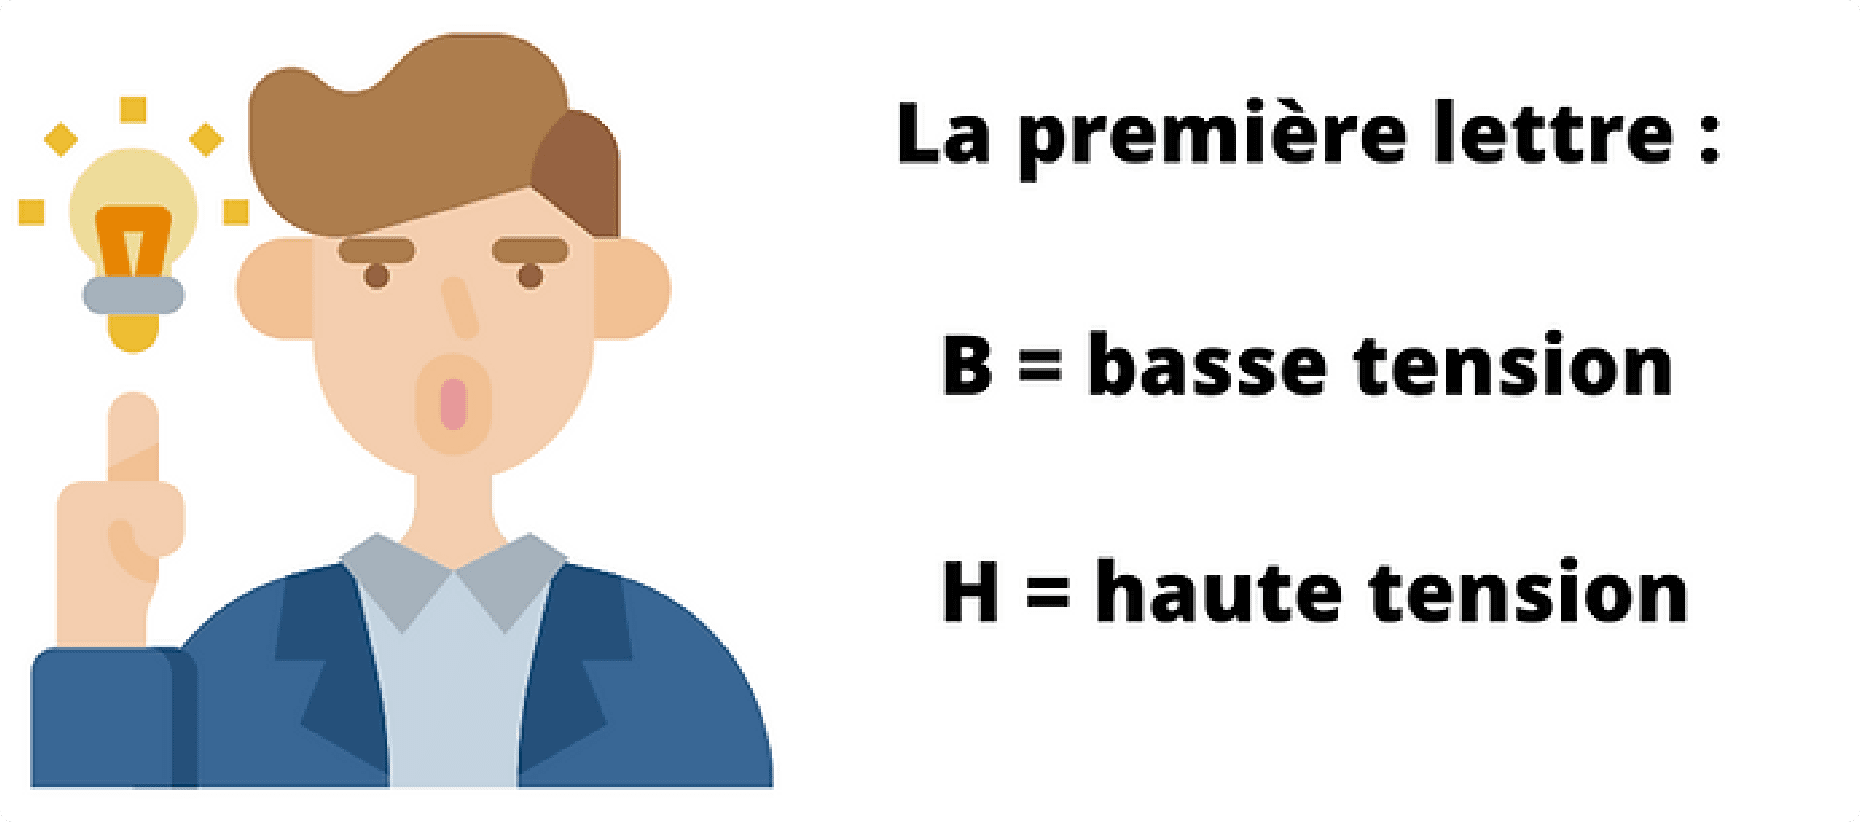 première lettre B = basse tension, H = haute tension